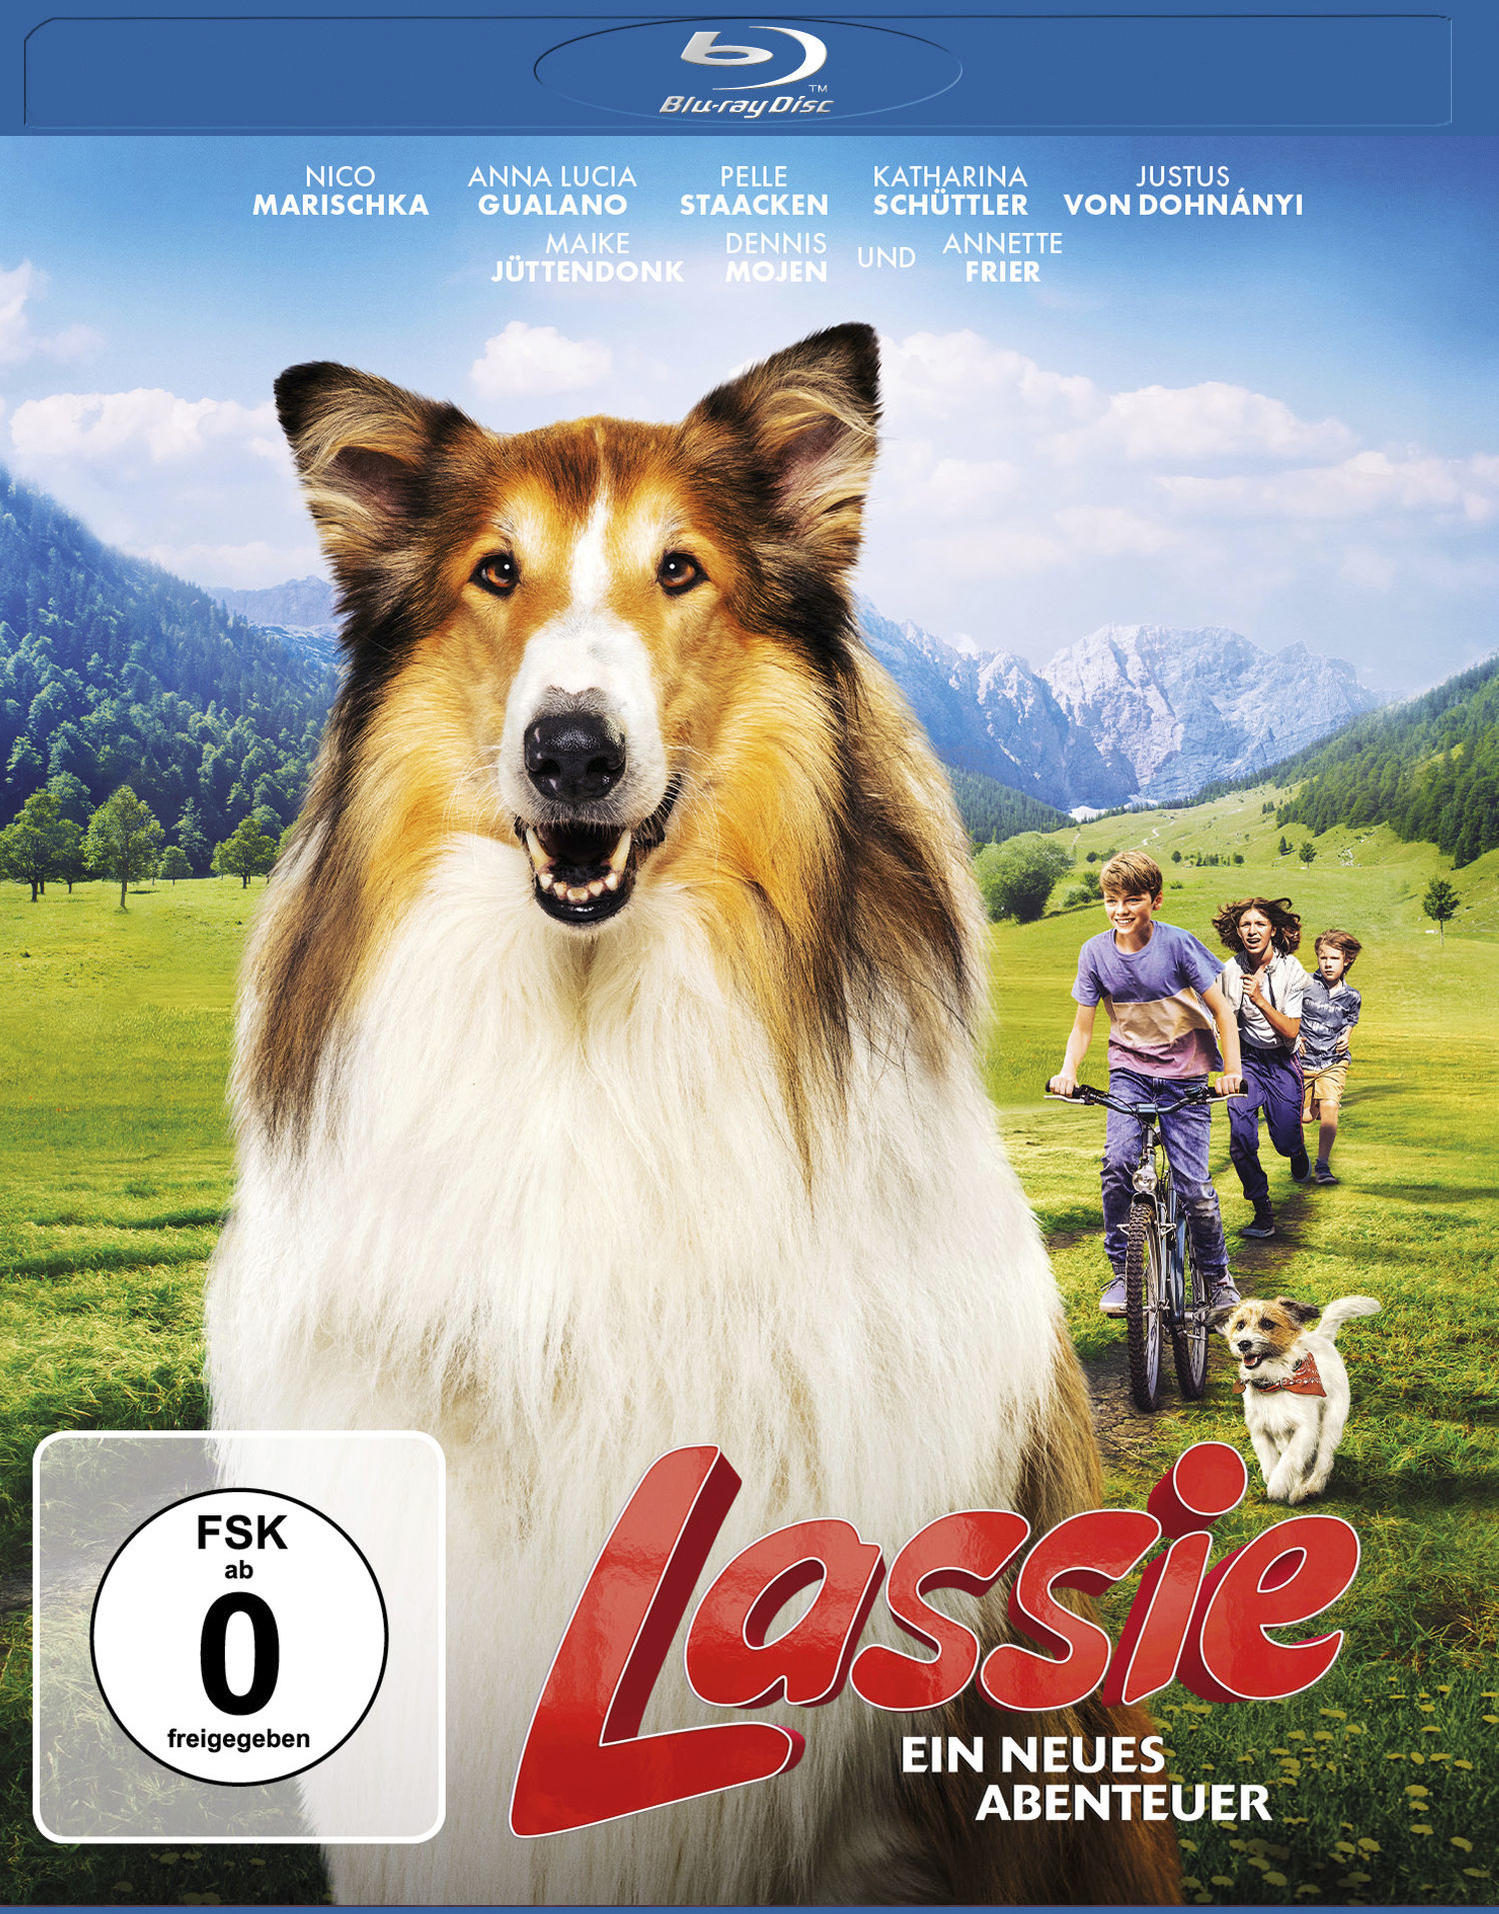 Abenteuer Blu-ray Lassie neues - Ein